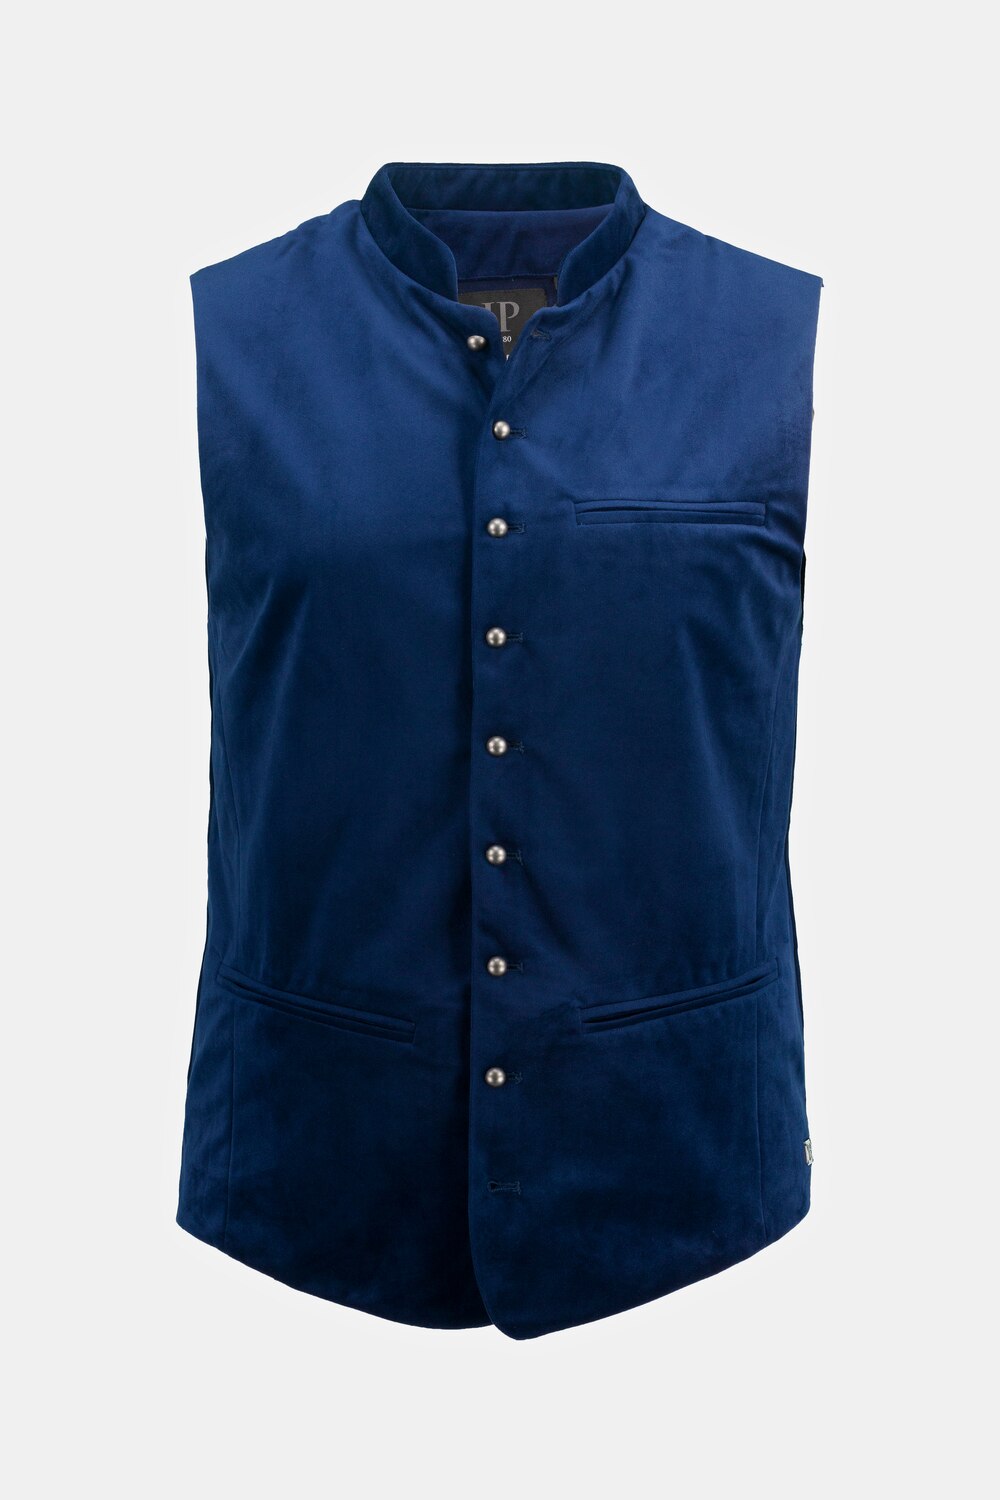 Grote Maten Fluwelen vest, Heren, blauw, Maat: 66, Polyester, JP1880